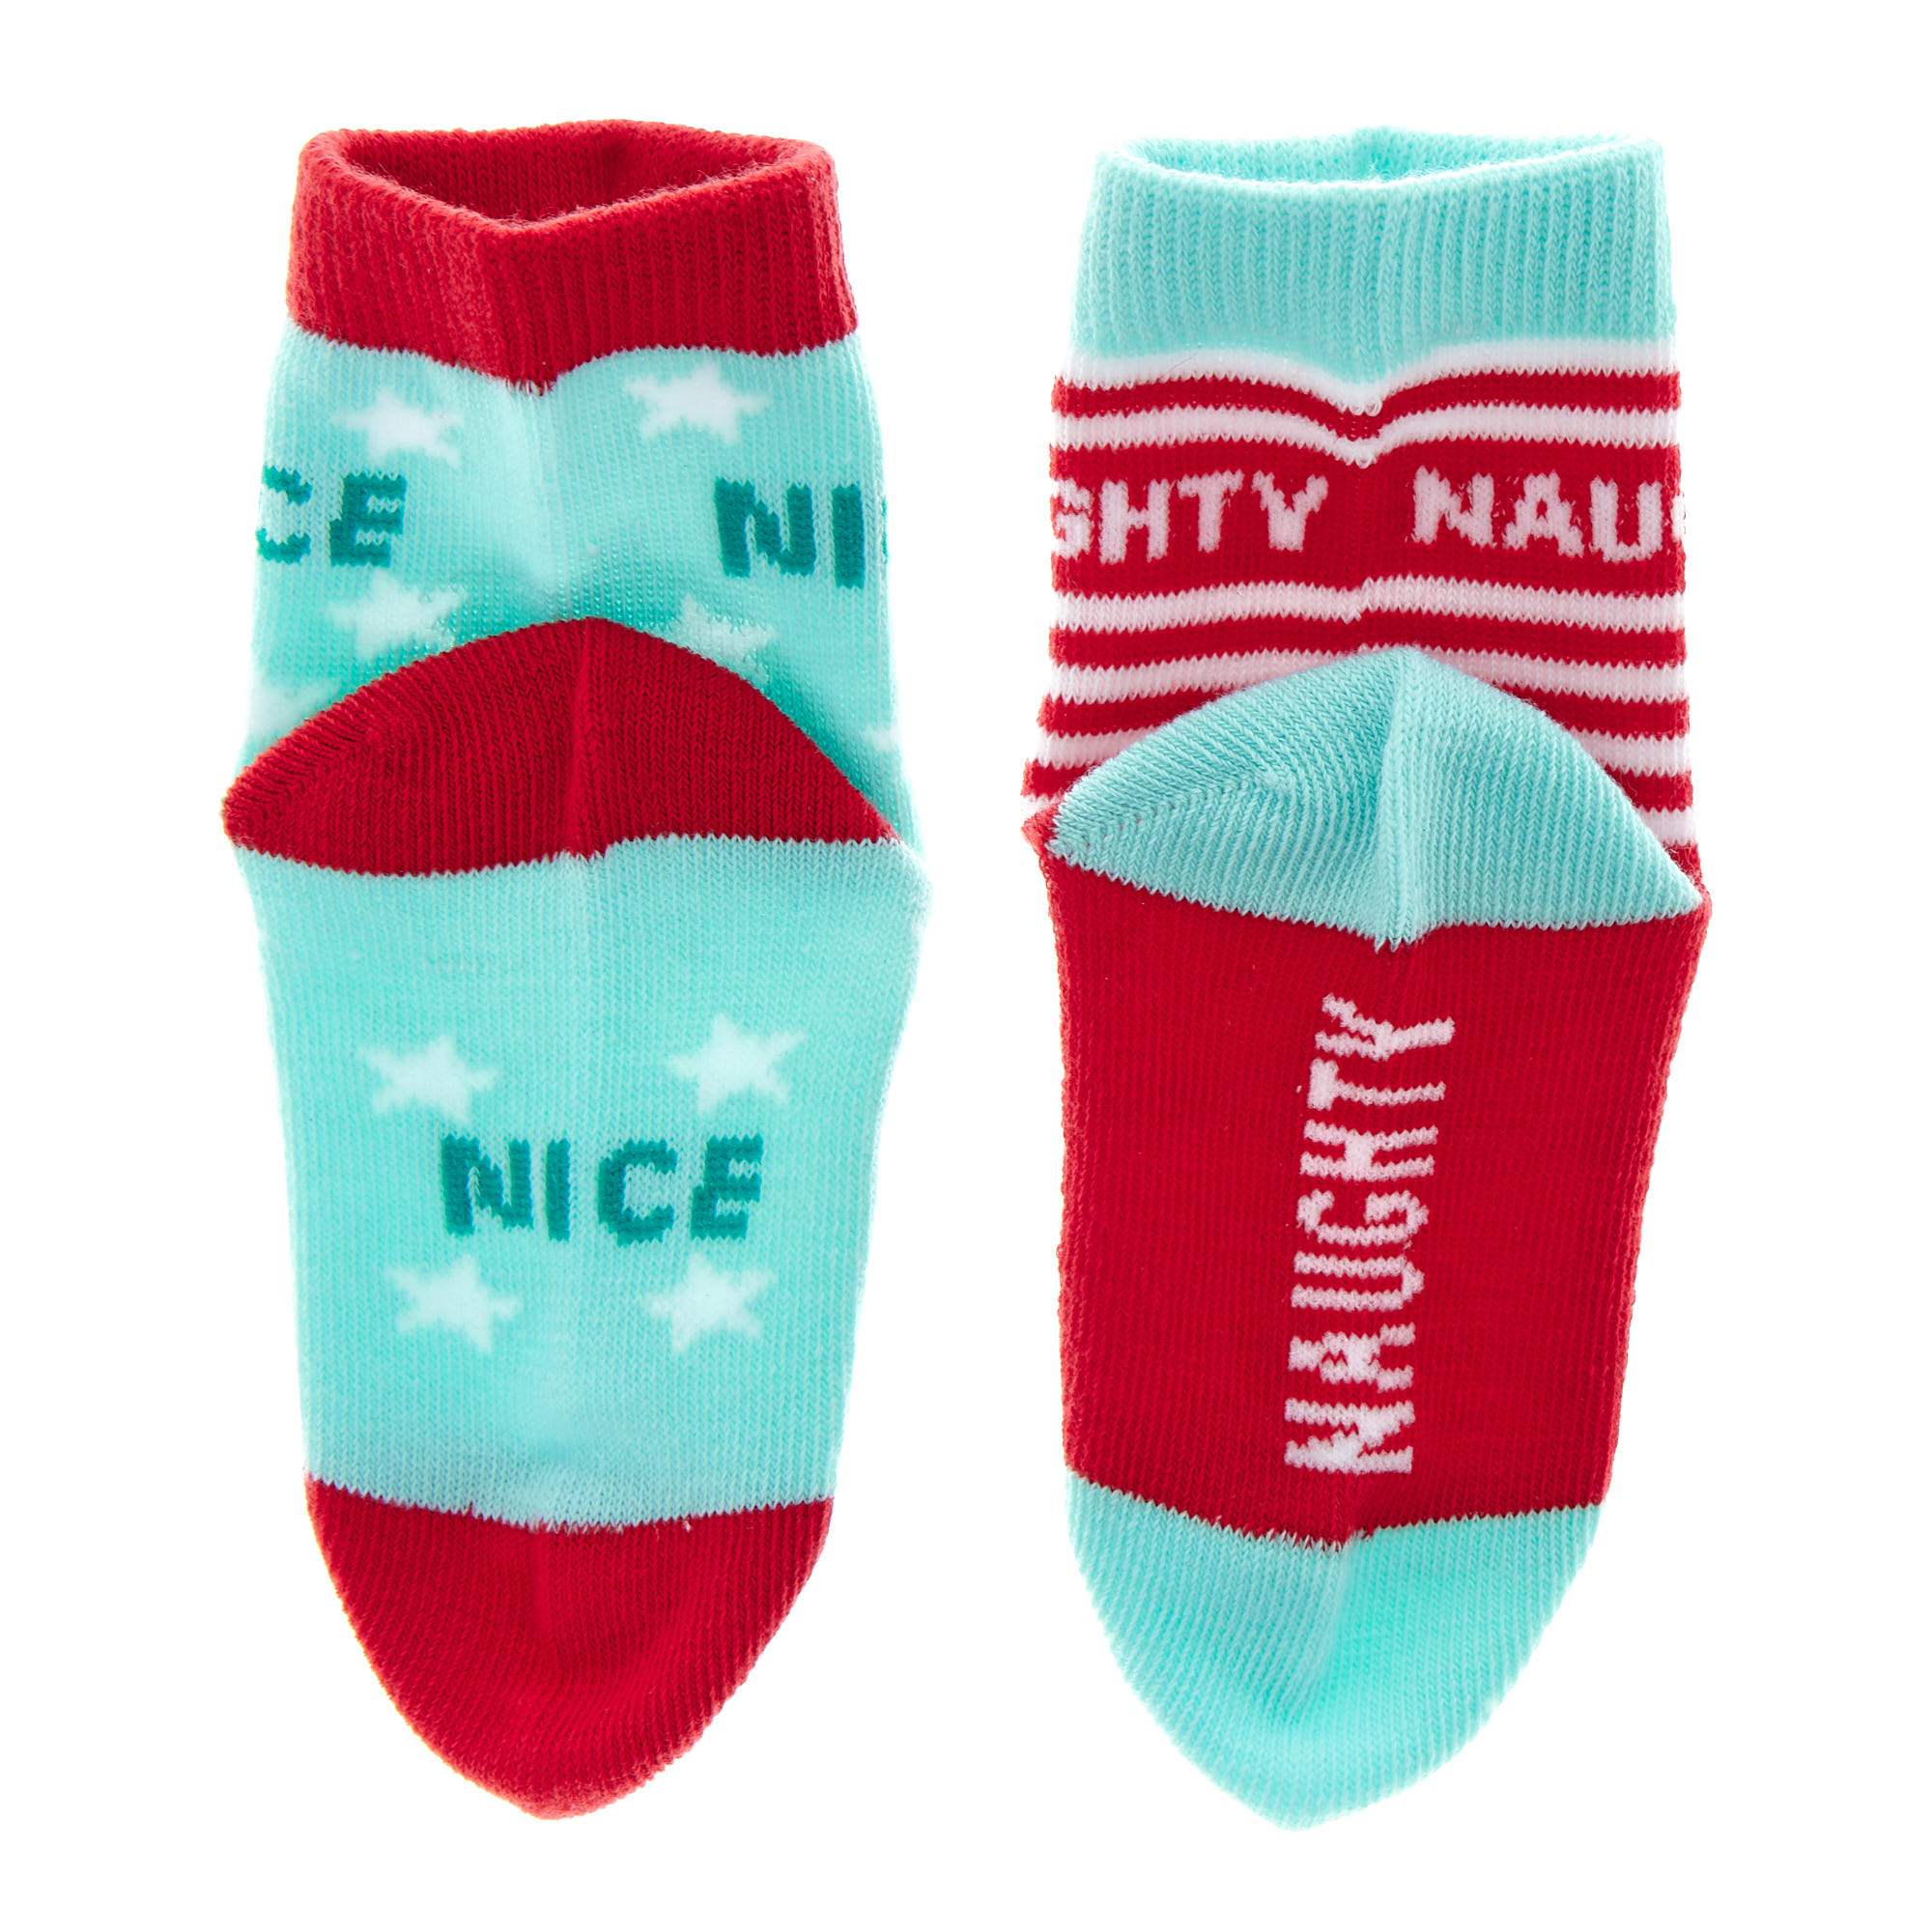 Pack of 2 Naughty & Nice Christmas Socks Age 3-8